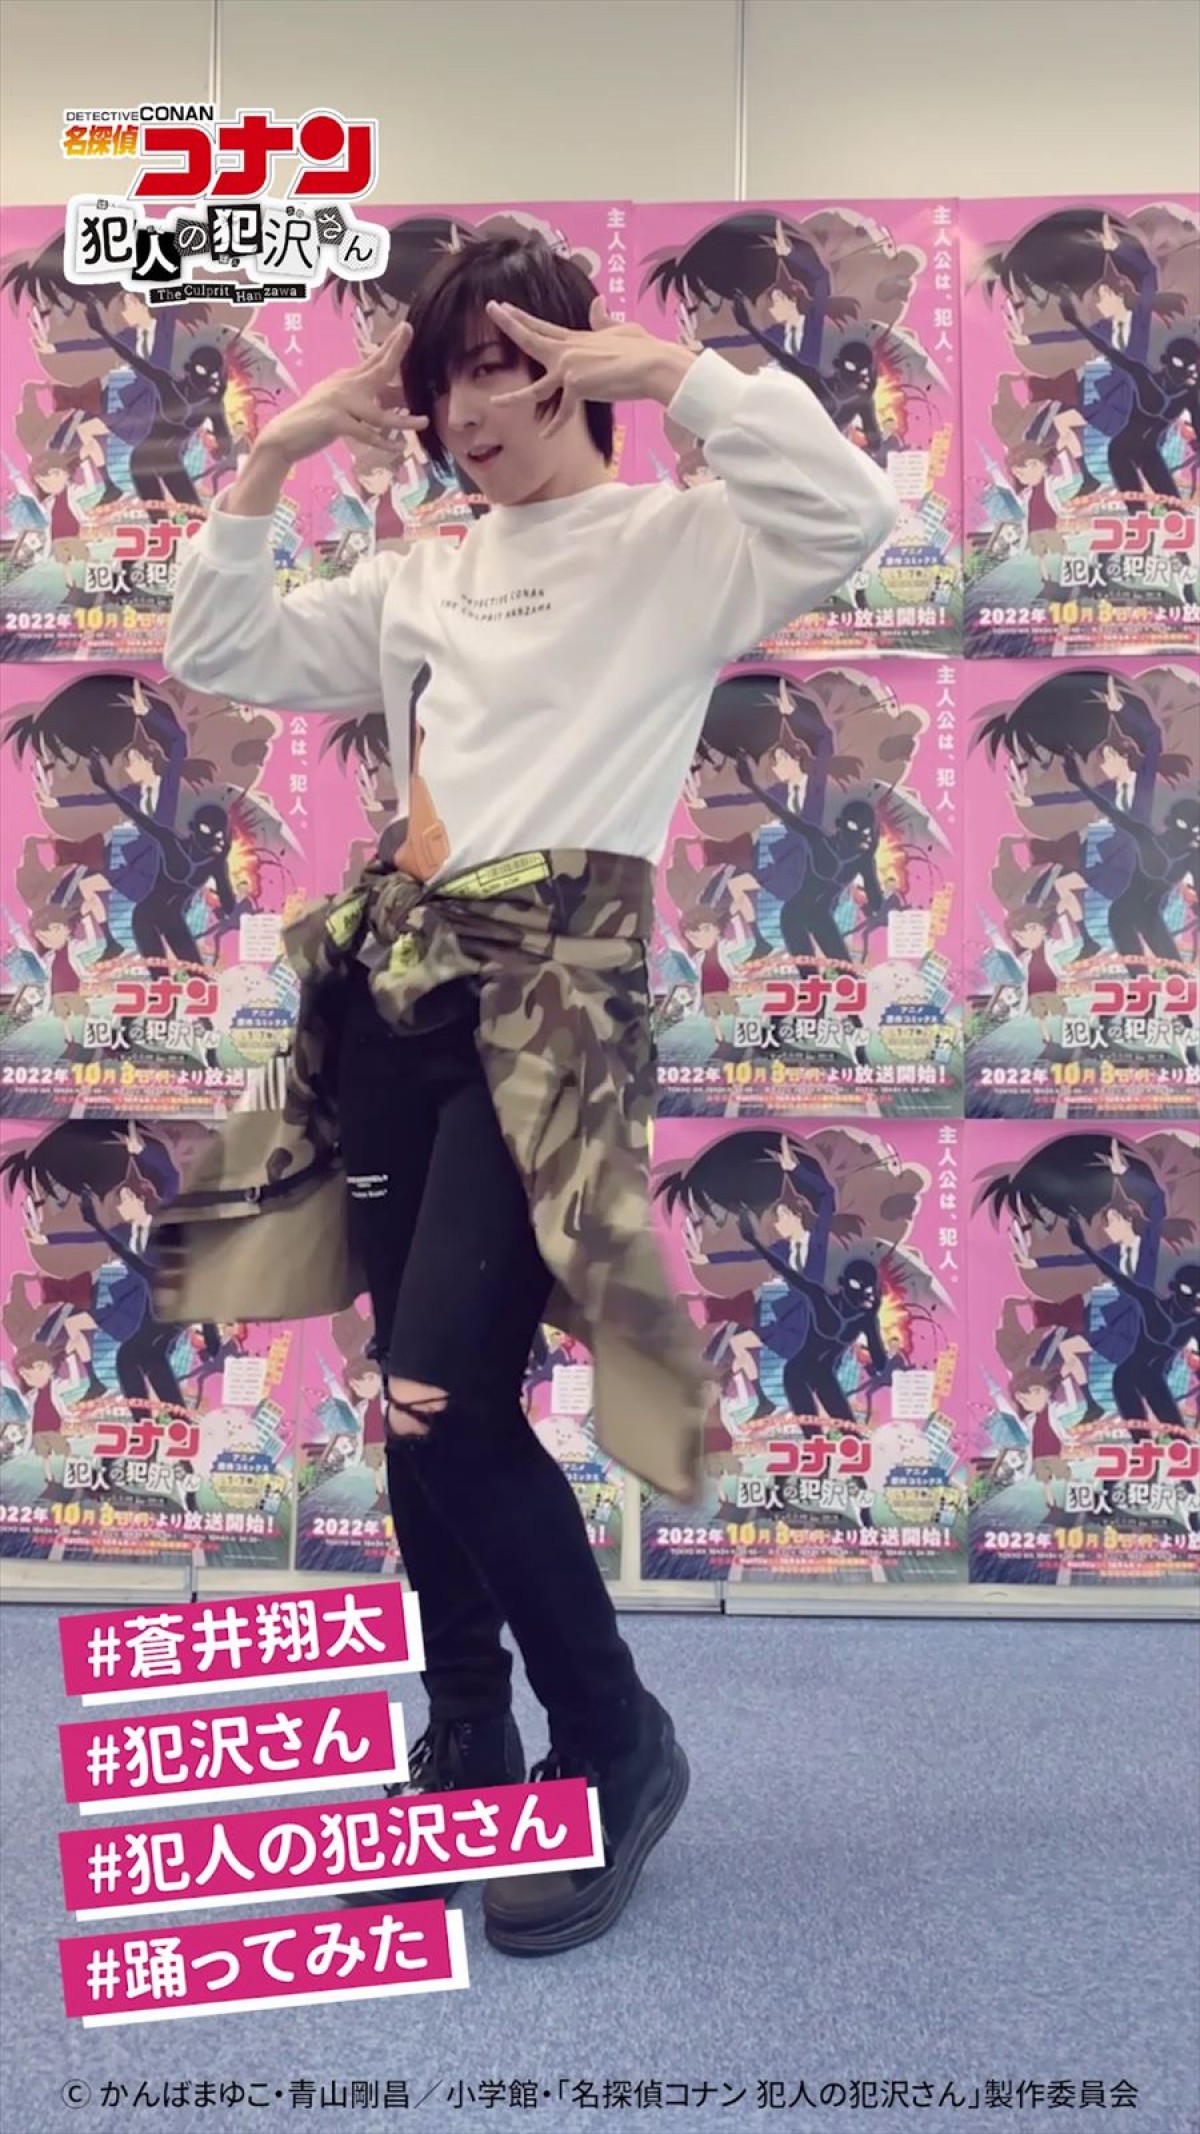 蒼井翔太が踊る「捕まえて、今夜。」ダンス動画解禁　『犯沢さん』12話あらすじも公開